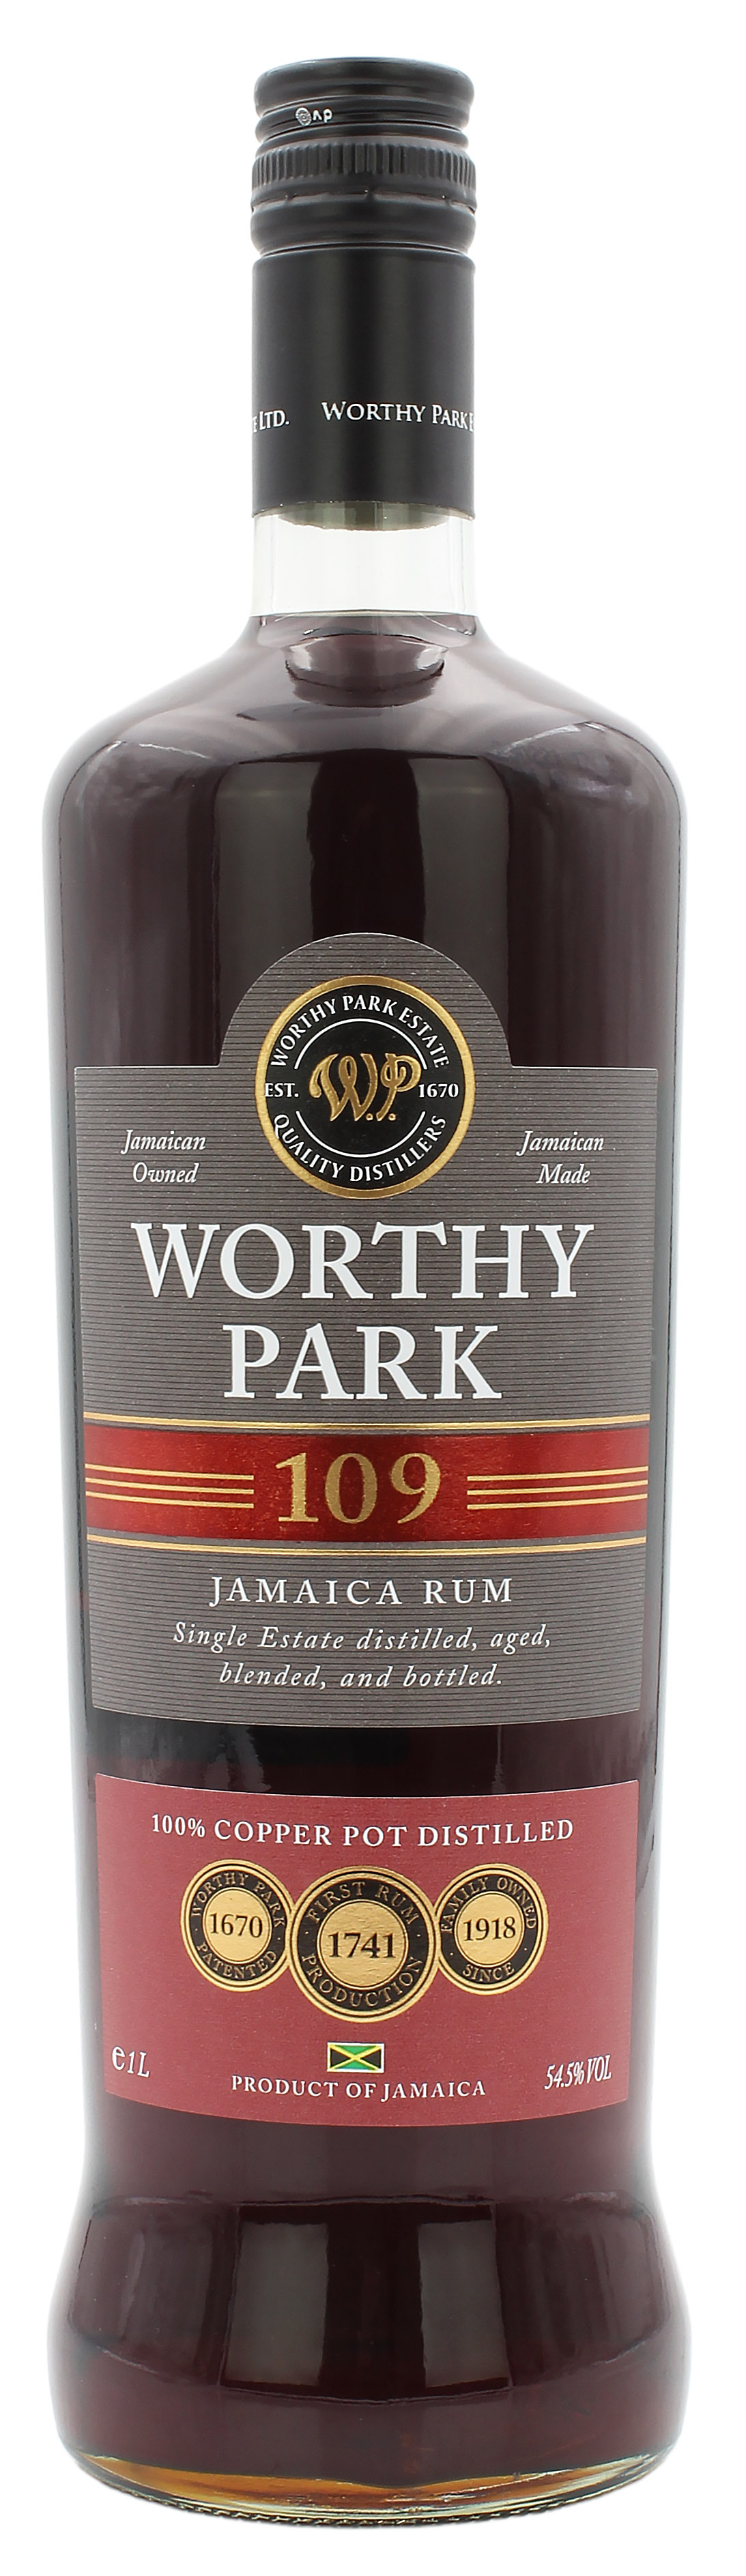 Worthy Park 109 Jamaica Rum 54.5% 1Liter